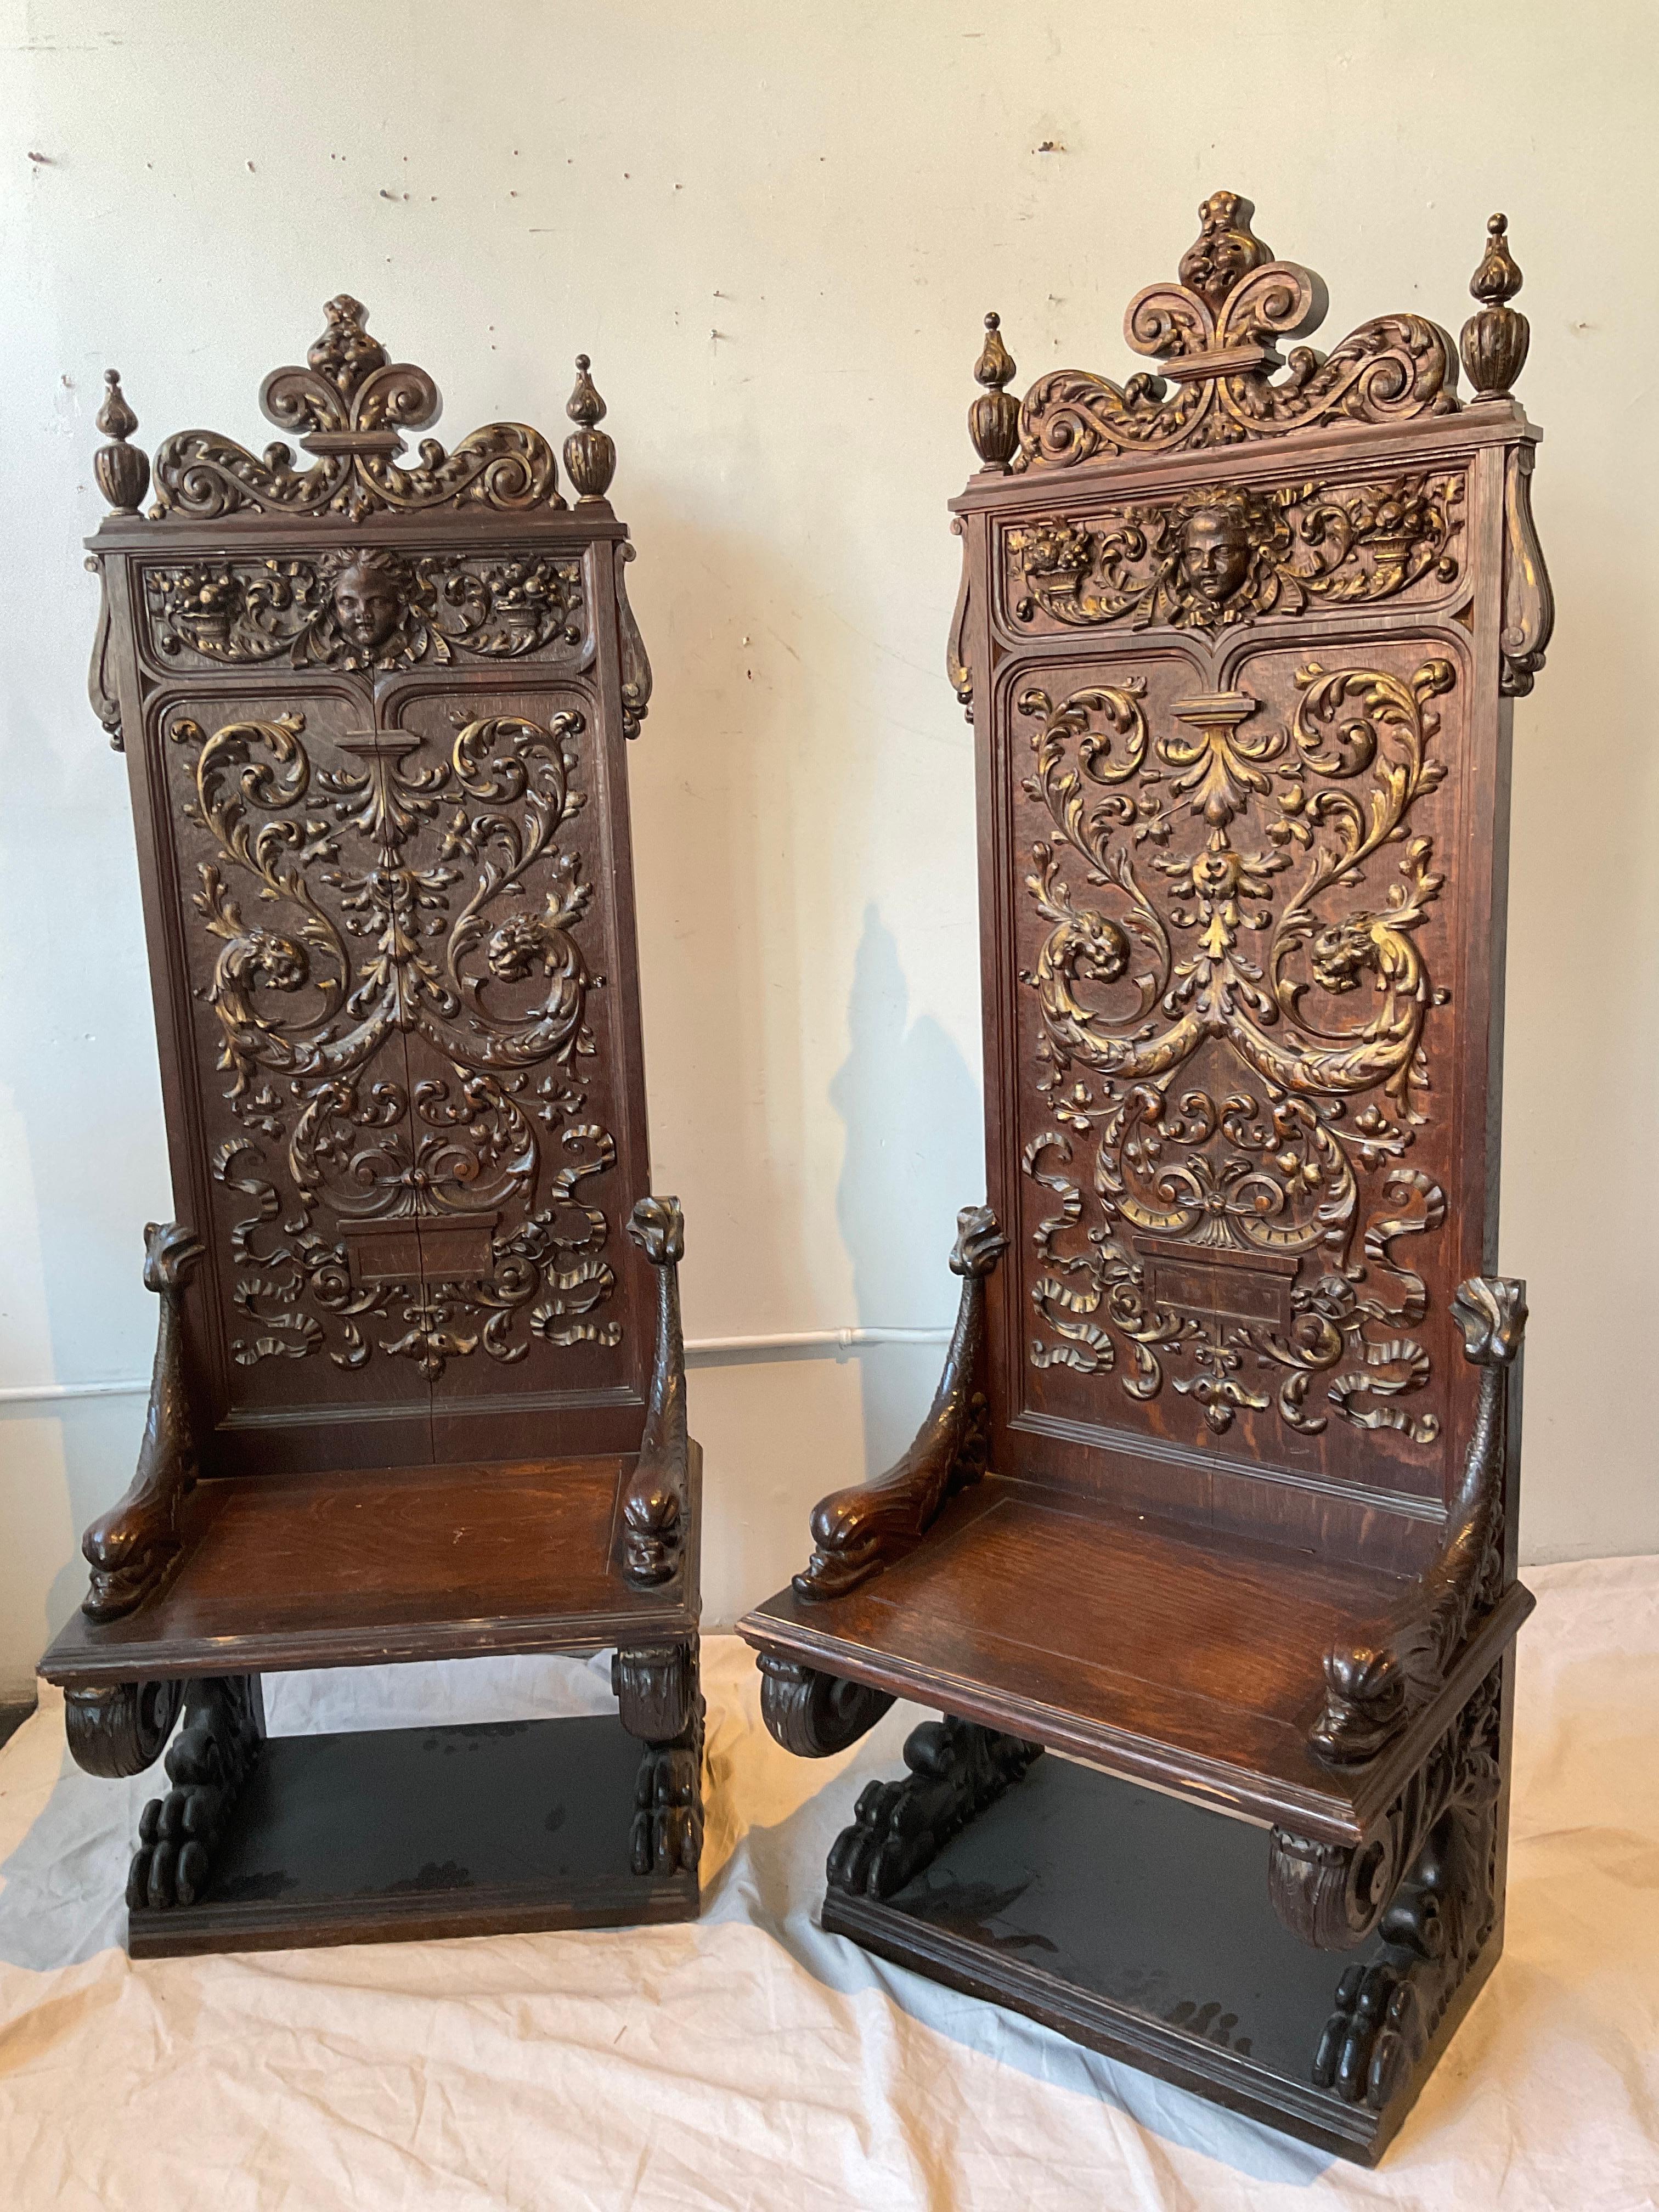 Paar hohe gotische Holzstühle aus den 1890er Jahren  Gesichter, Panther, Füllhörner, Delphine, Löwentatzen - alles in das Holz geschnitzt.
In der Mitte des Stuhls geteilt, wie im letzten Bild gezeigt.